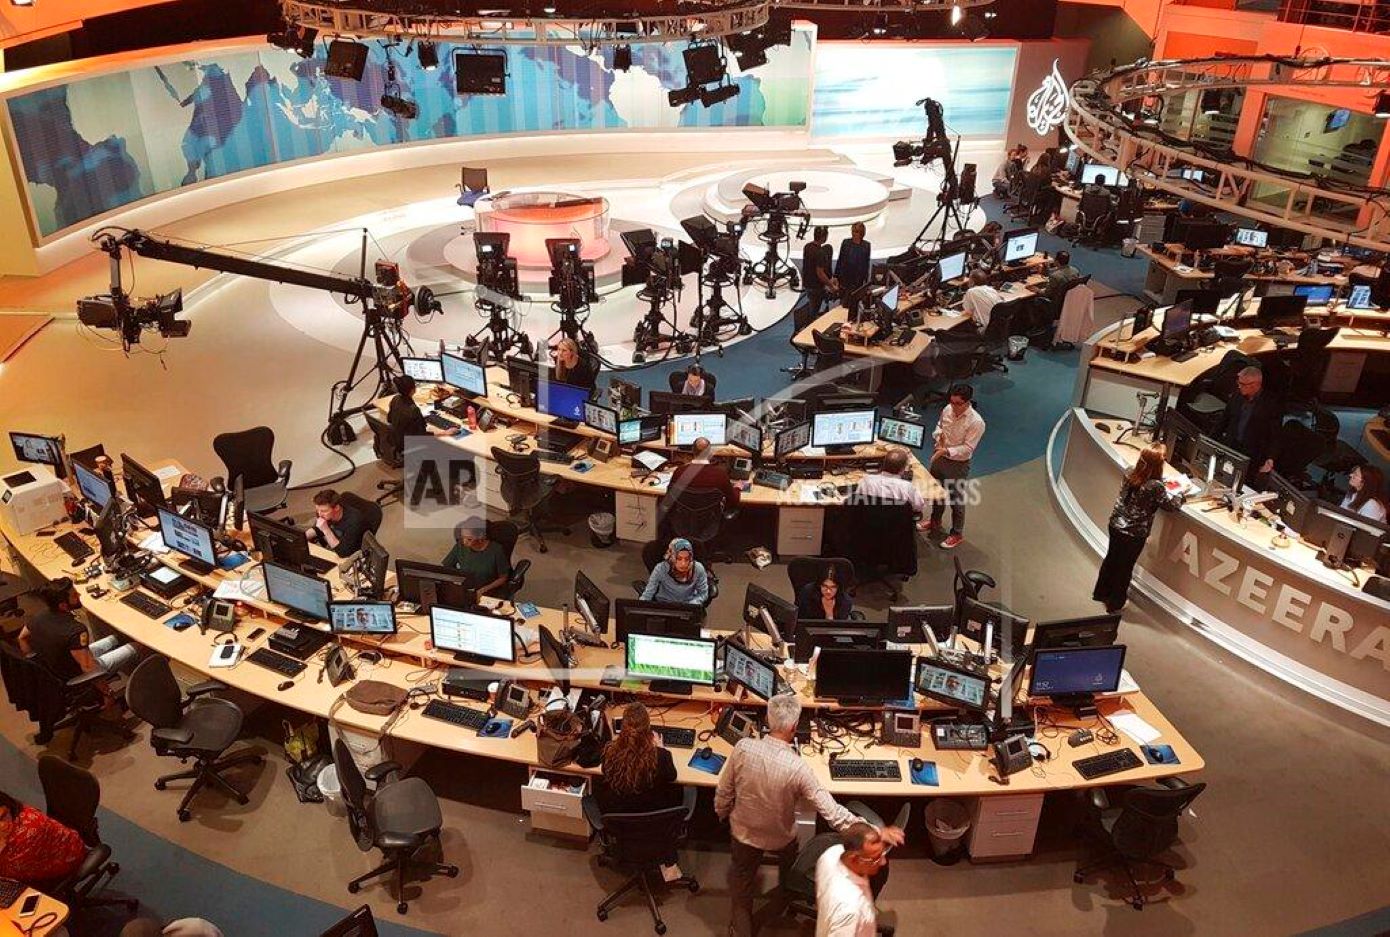 Το ισραηλινό υπουργικό συμβούλιο ενέκρινε τη διακοπή της λειτουργίας του τηλεοπτικού δικτύου Αλ Τζαζίρα στη χώρα